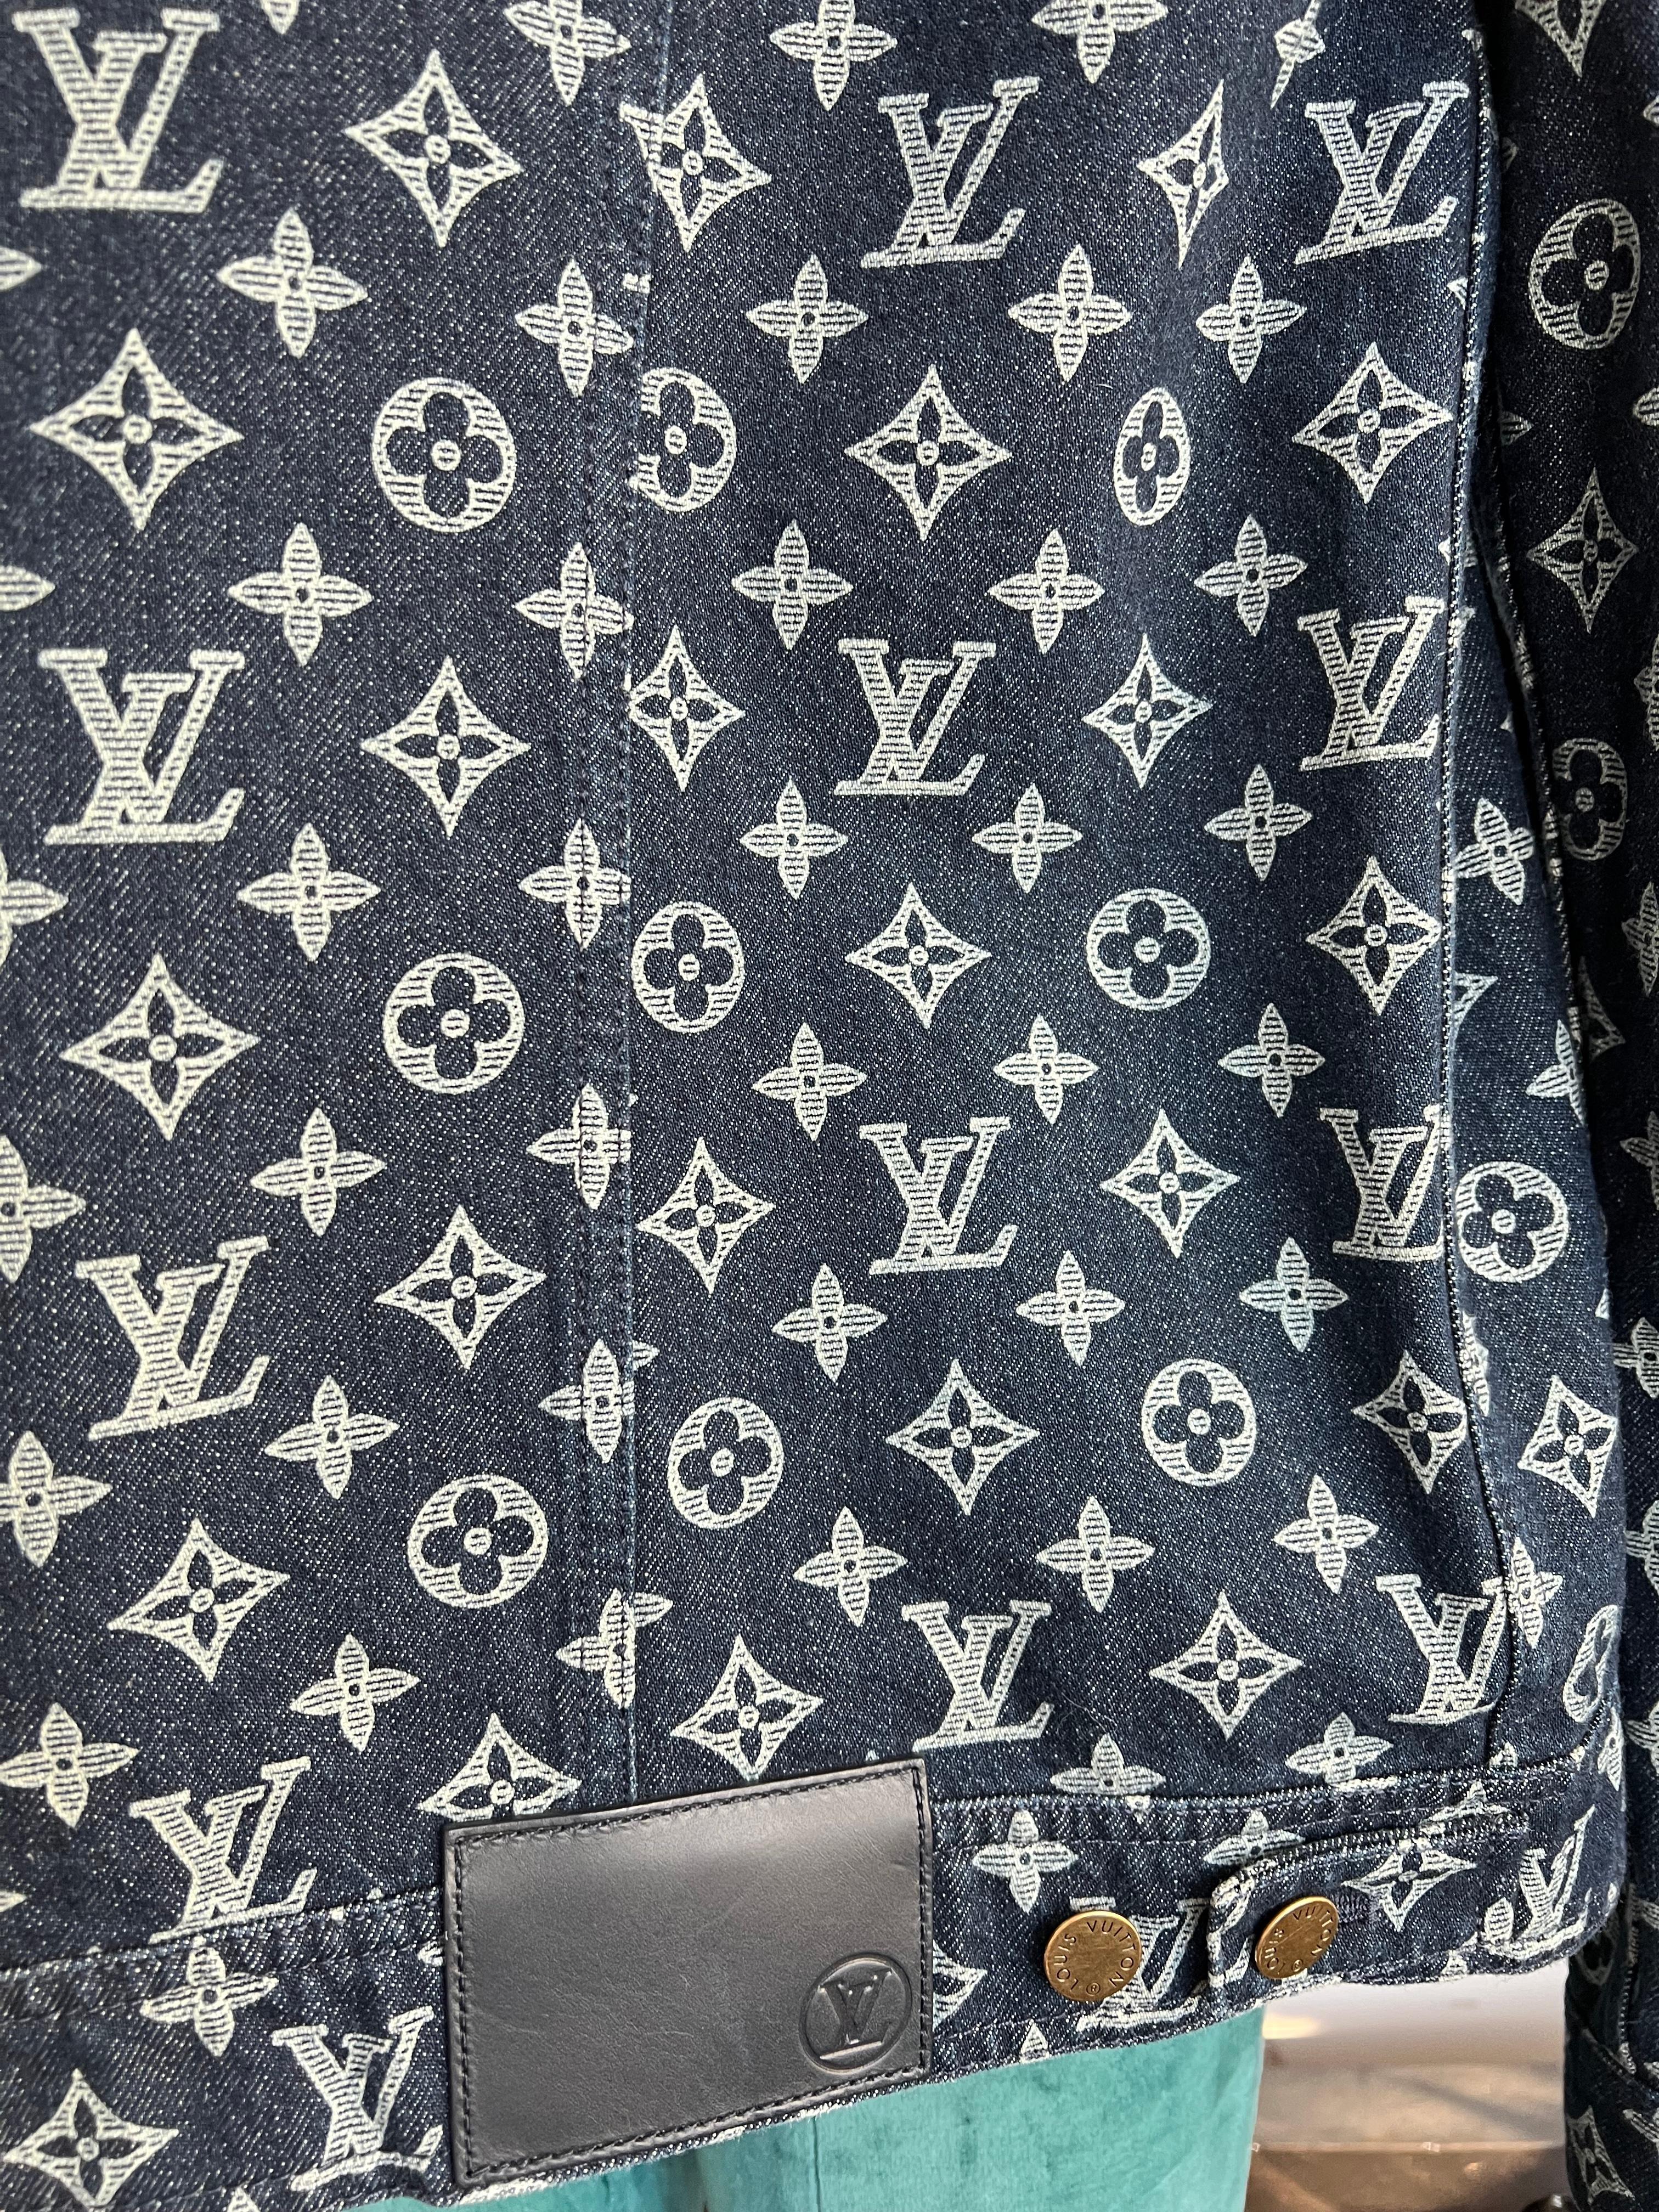 Women's or Men's 2019 Louis Vuitton men's Monogram Denim Jacket by Virgil Abloh For Sale